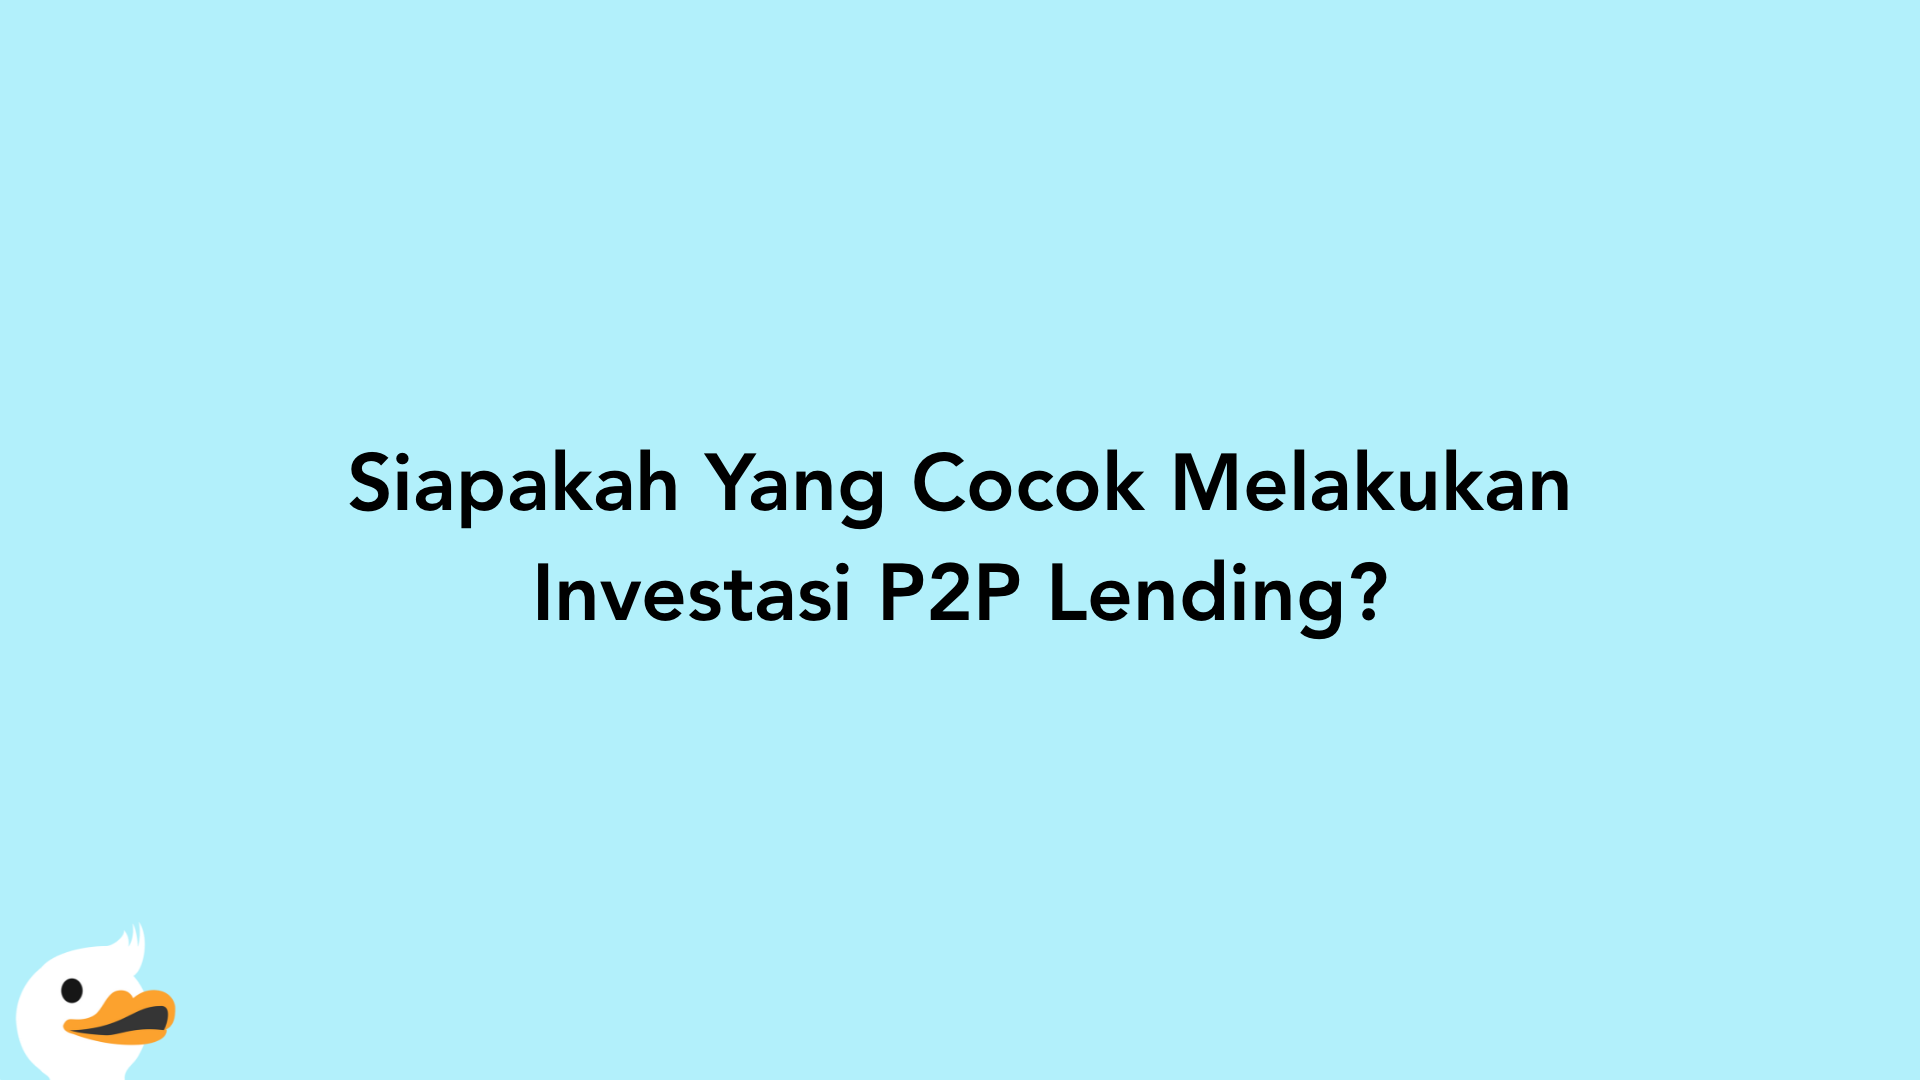 Siapakah Yang Cocok Melakukan Investasi P2P Lending?